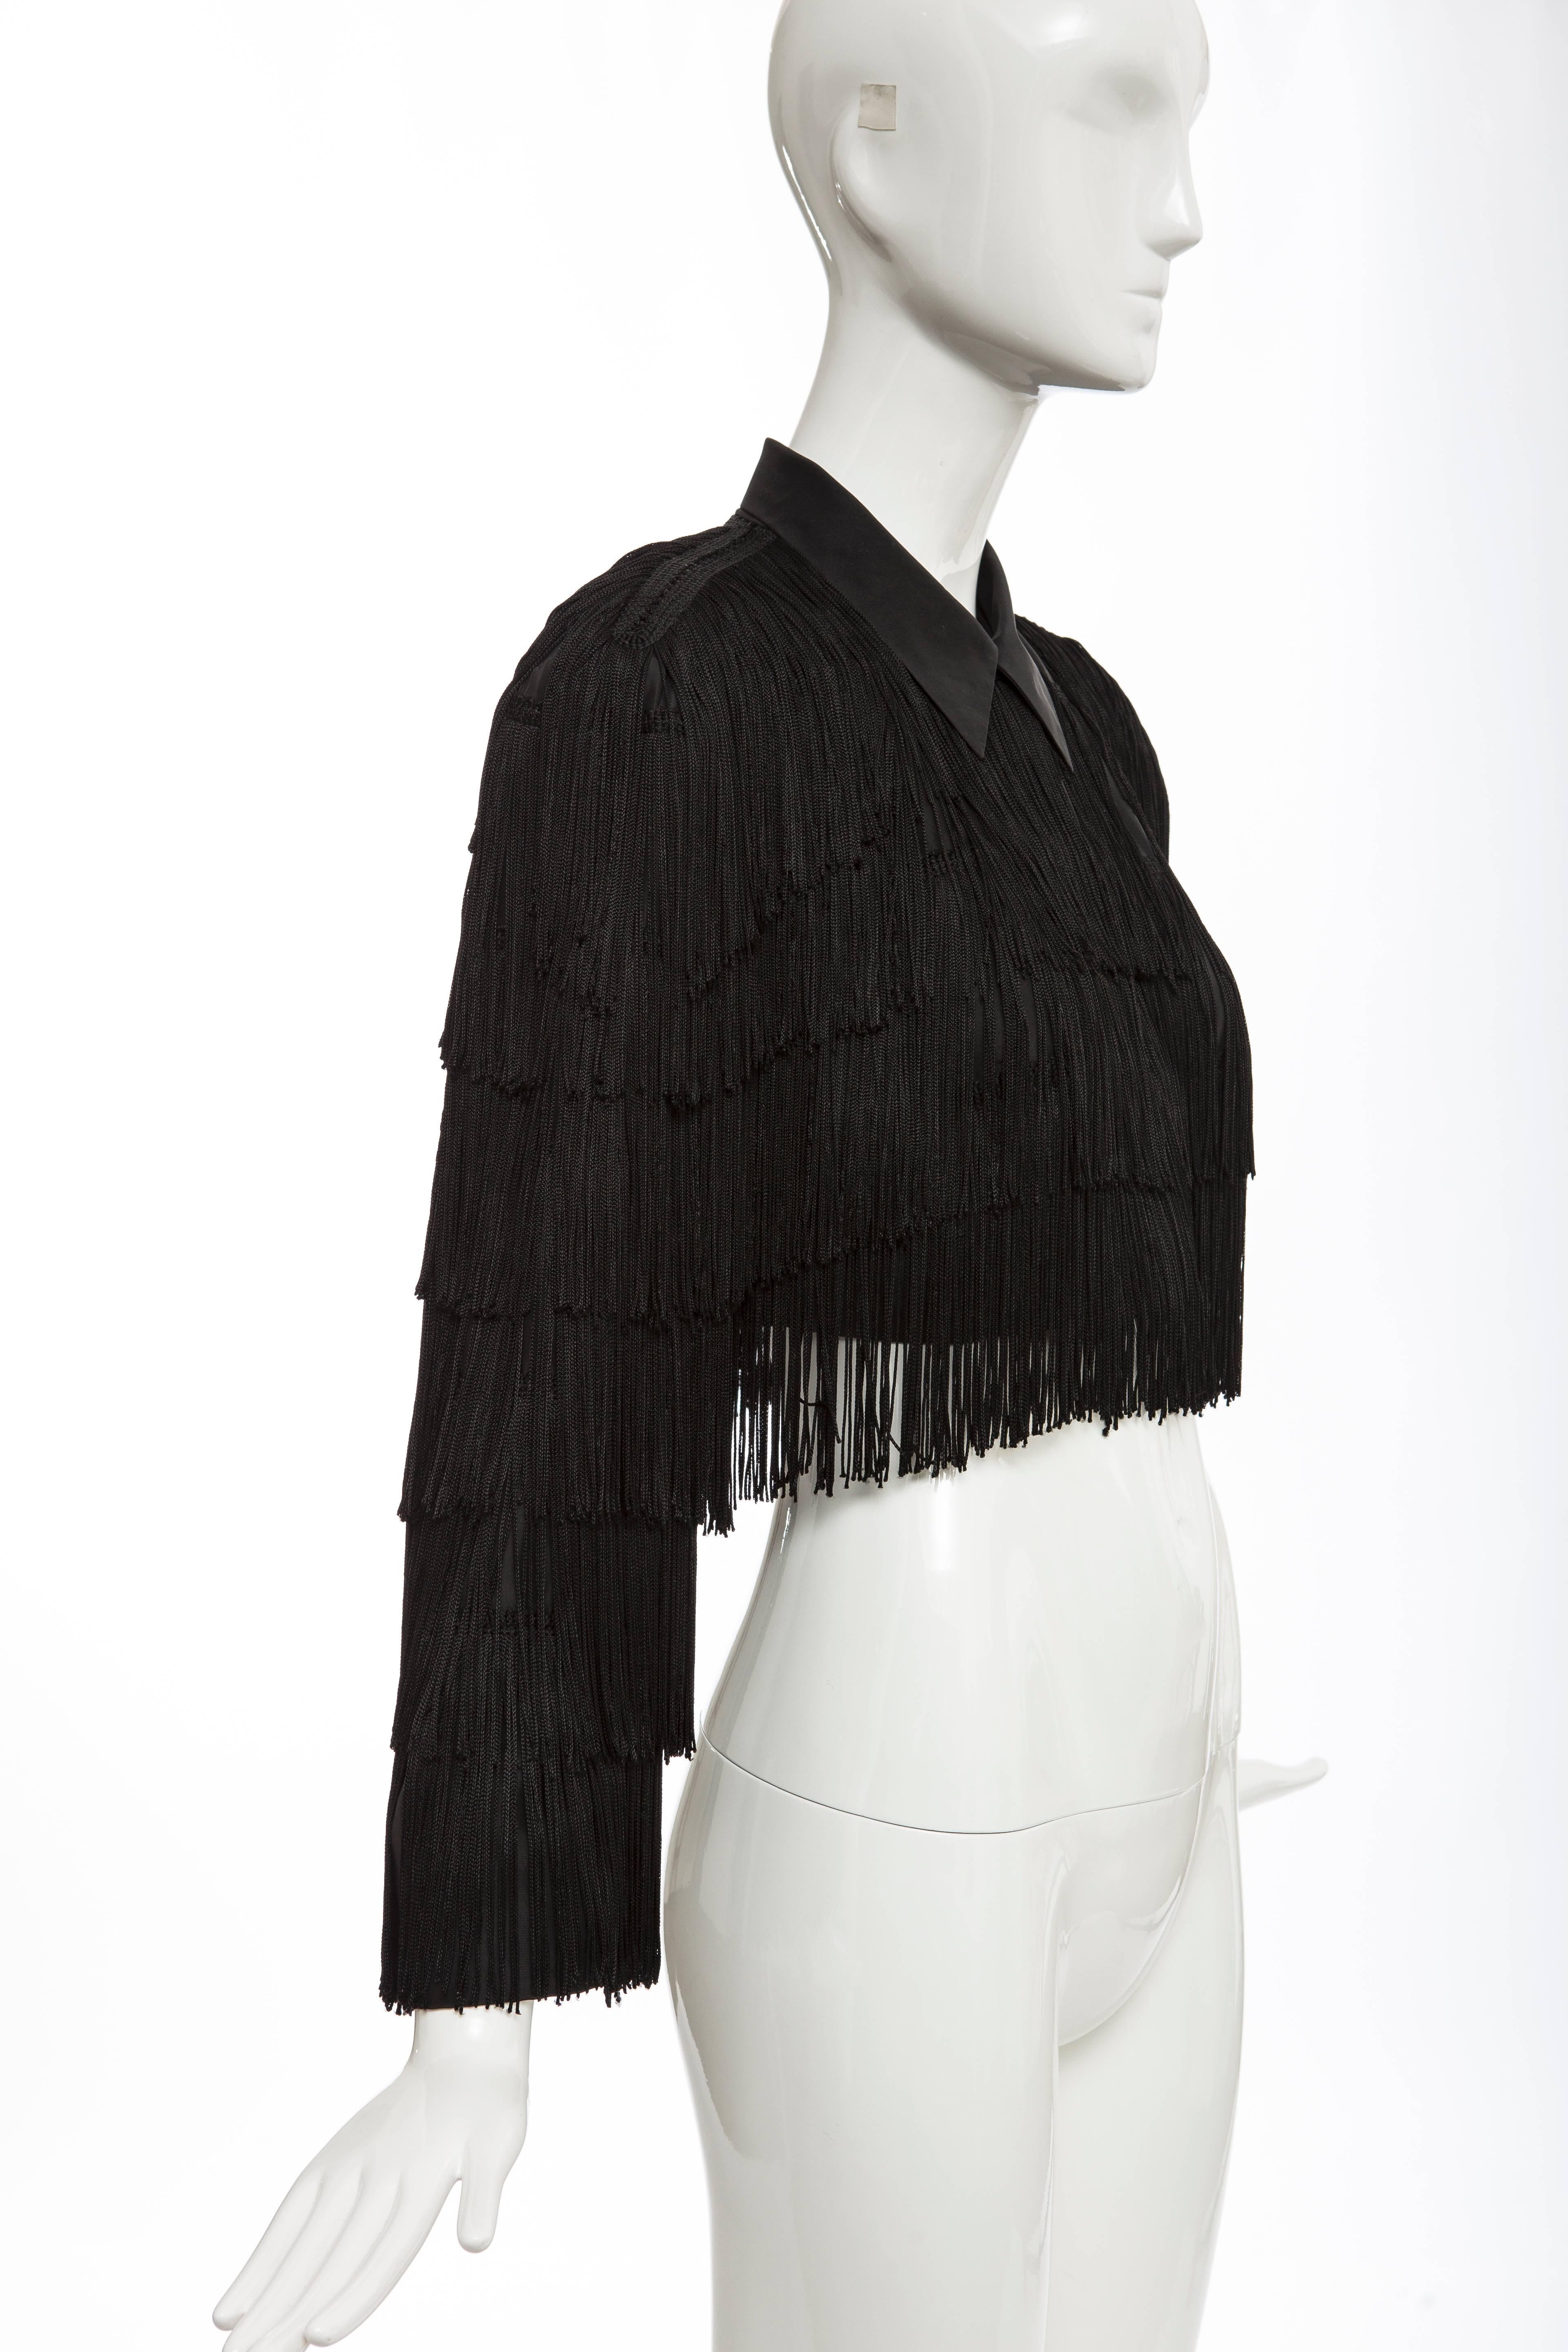 Norma Kamali OMO Black Fringe Cropped Jacket, Circa 1980's 1